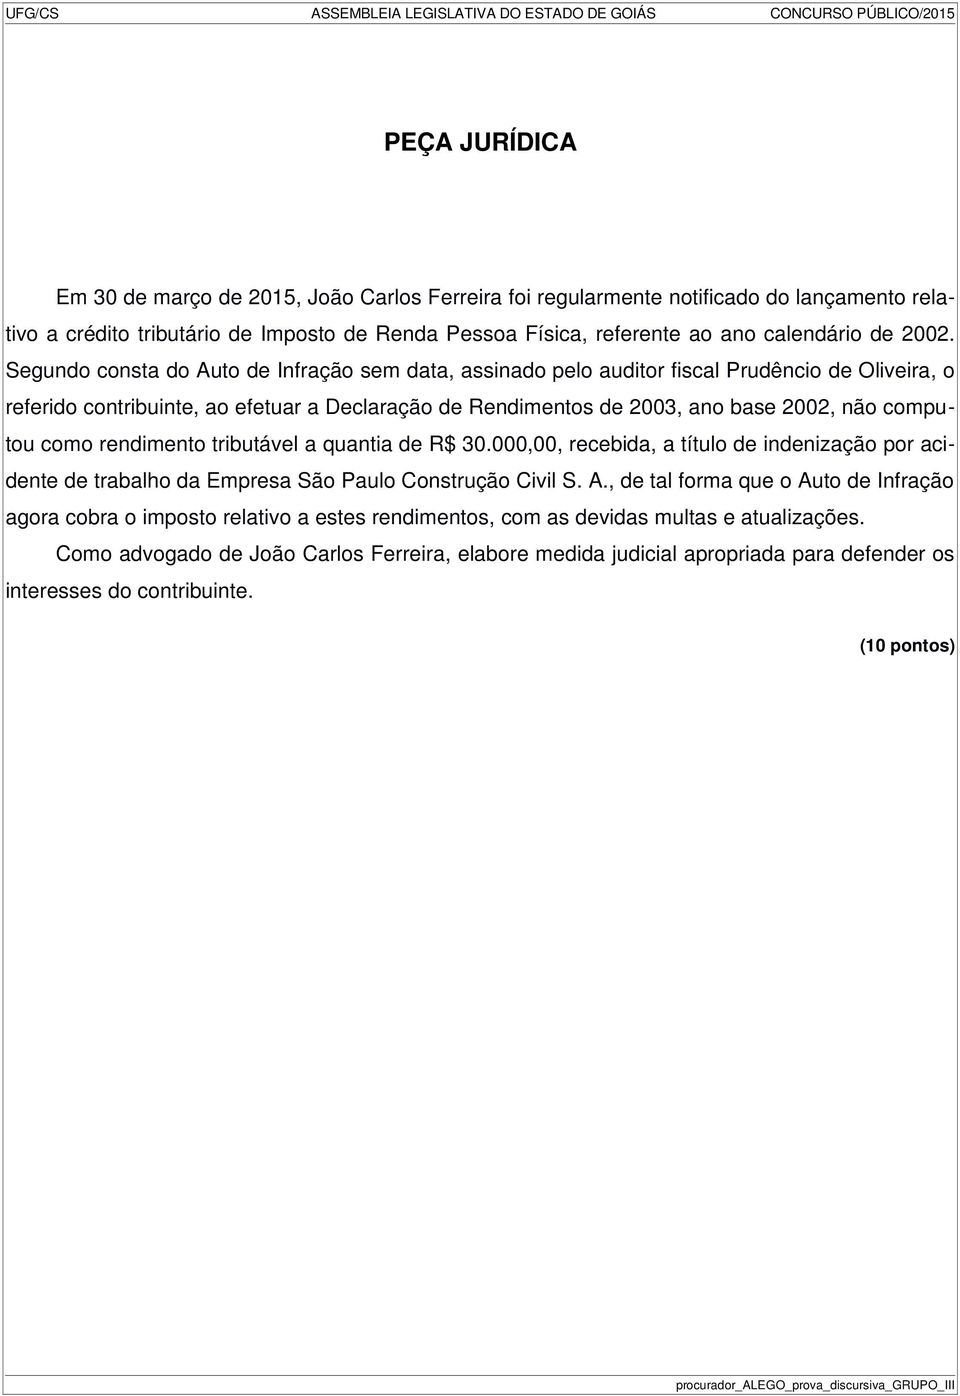 Segundo consta do Auto de Infração sem data, assinado pelo auditor fiscal Prudêncio de Oliveira, o referido contribuinte, ao efetuar a Declaração de Rendimentos de 2003, ano base 2002, não computou